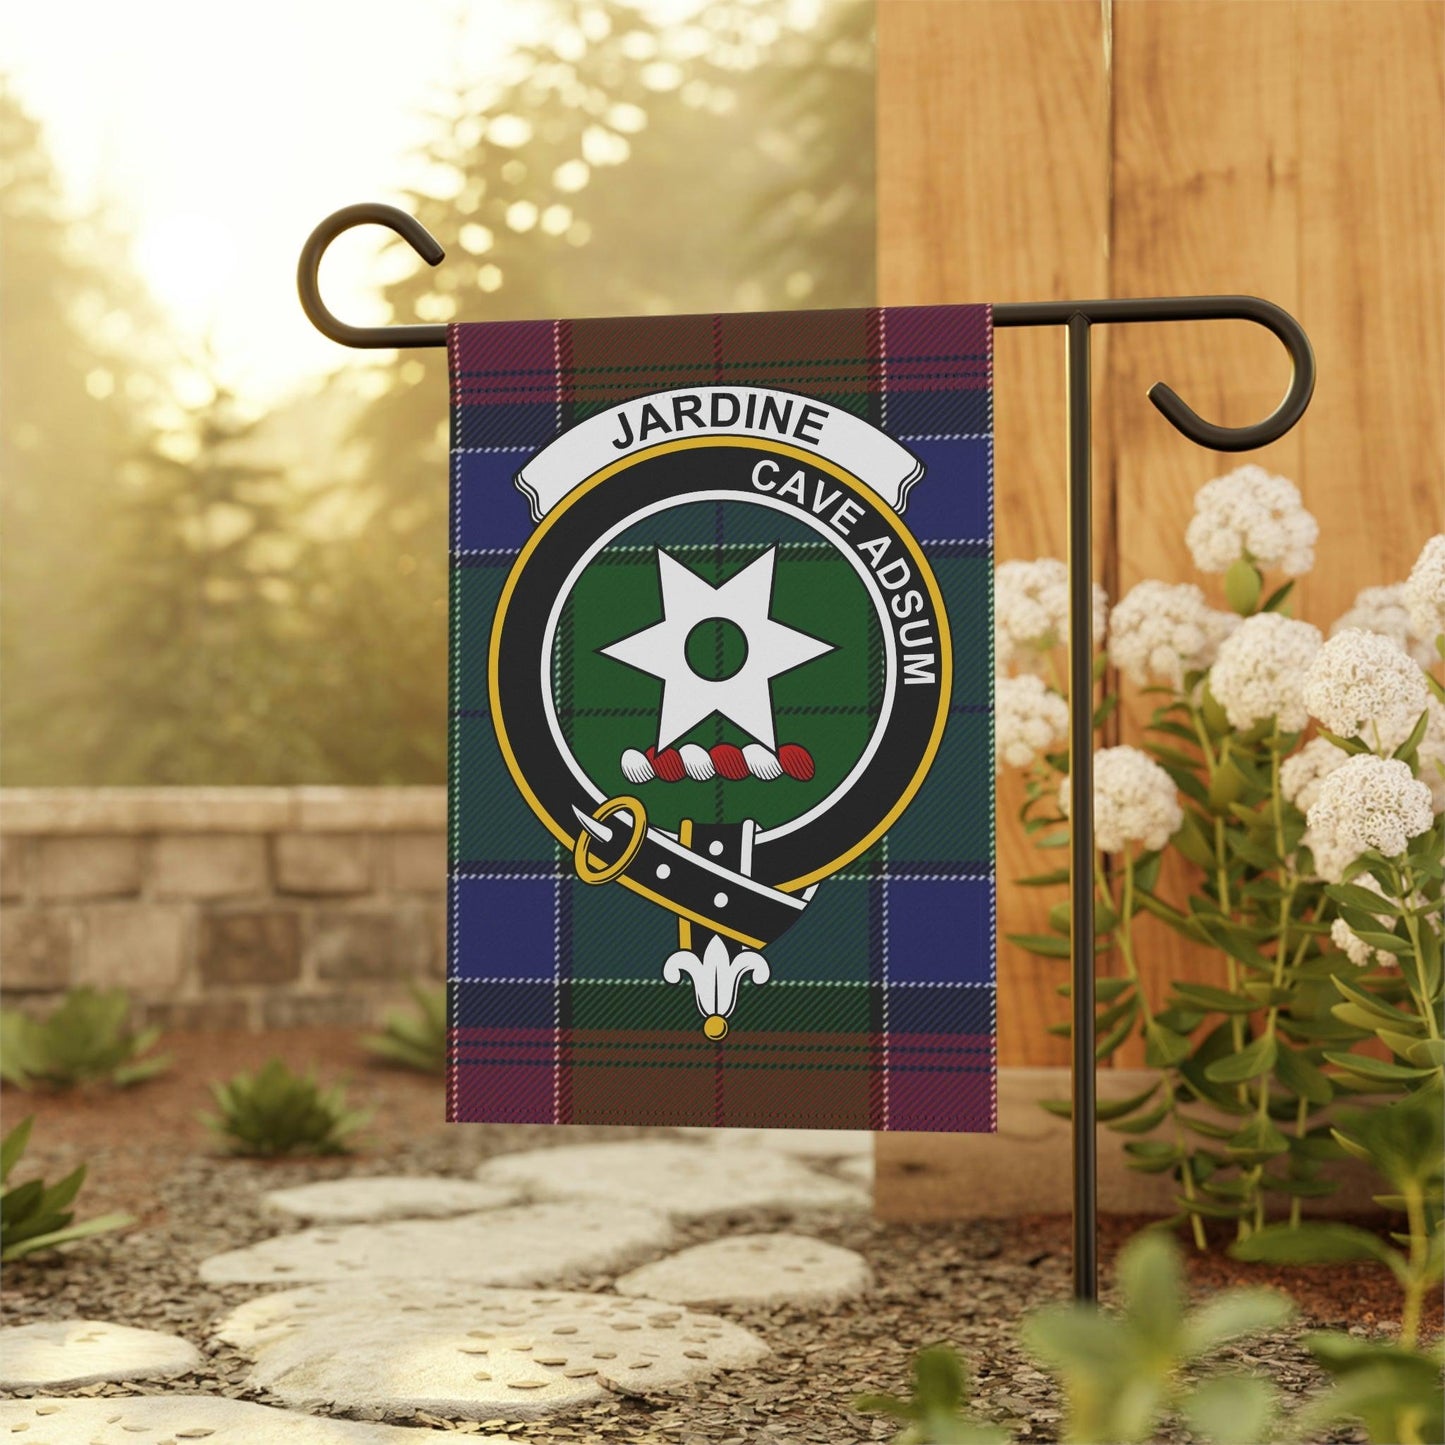 Jardine Clan Scottish Tartan Garden Banner, Jardine Family Crest Scotland Flag